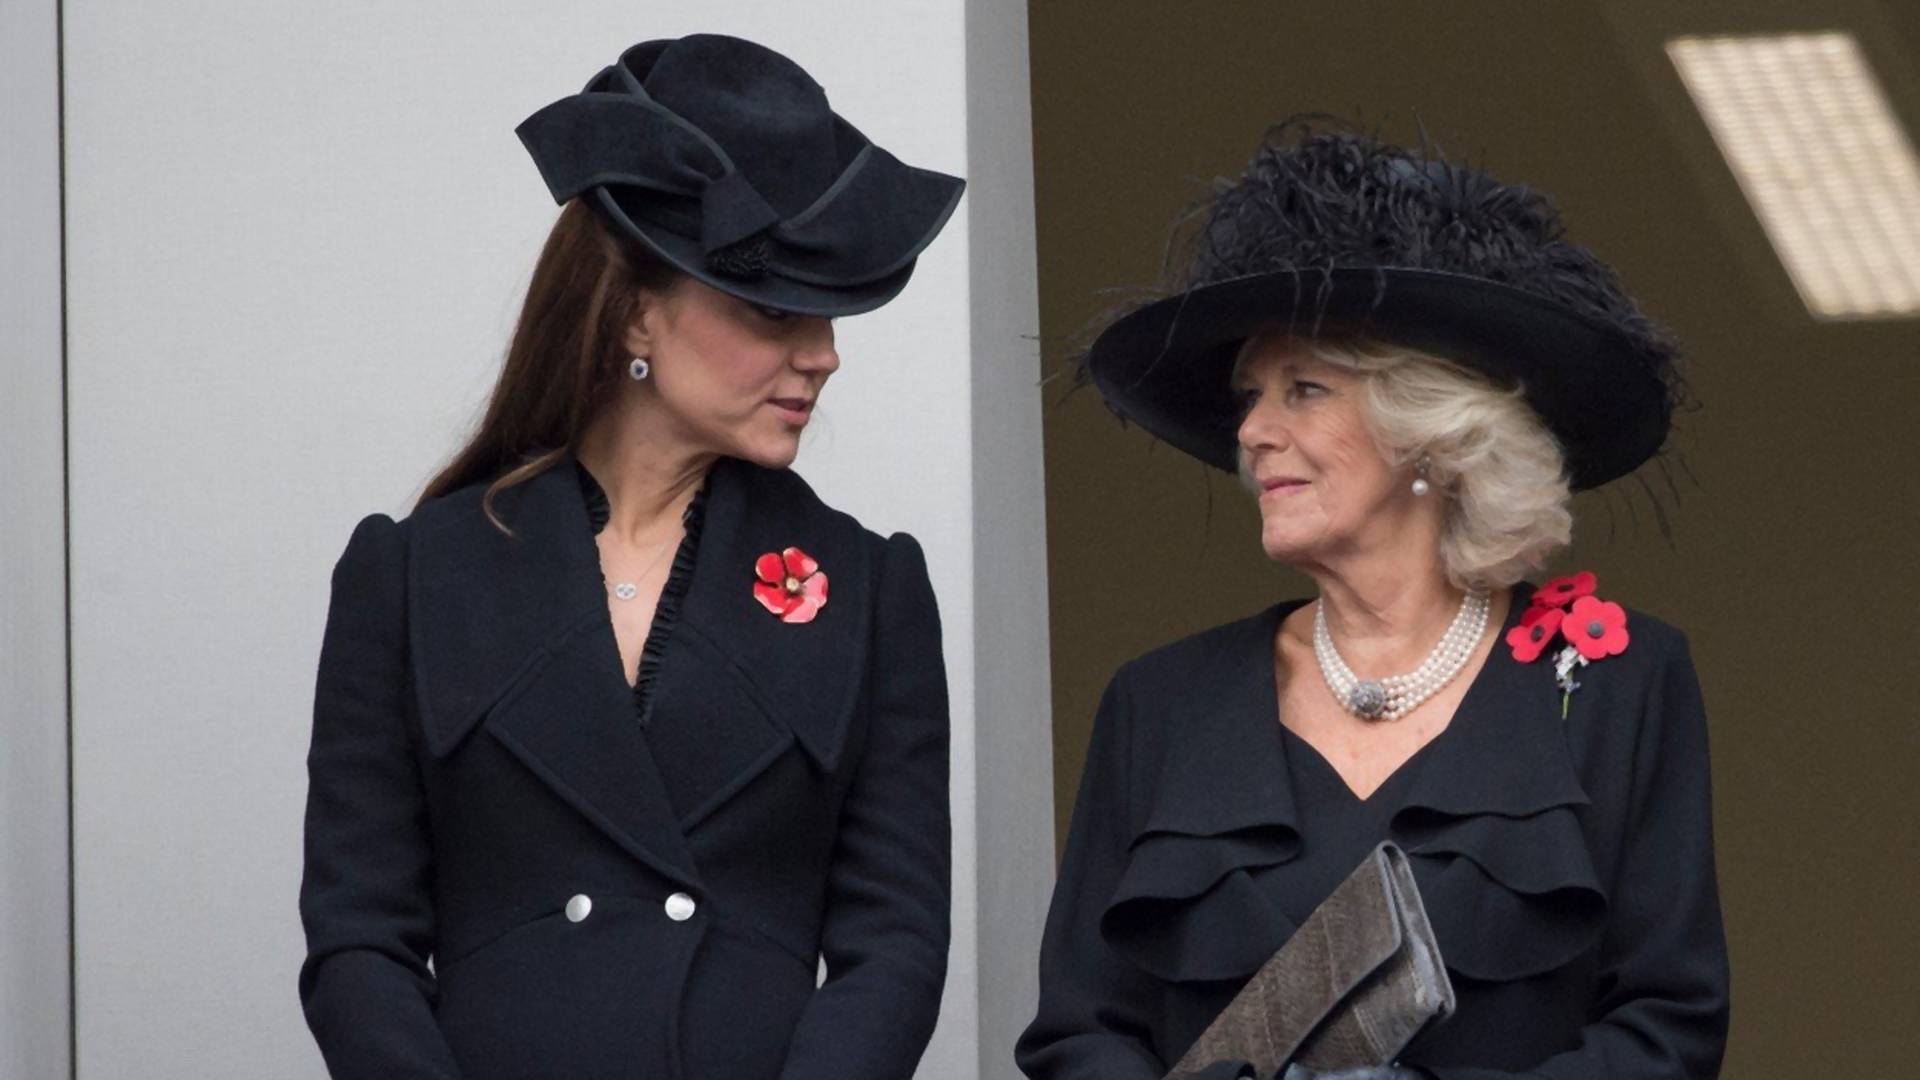 Članovi kraljevske porodice uvek sa sobom nose "odelo za sahranu" - za svaki slučaj